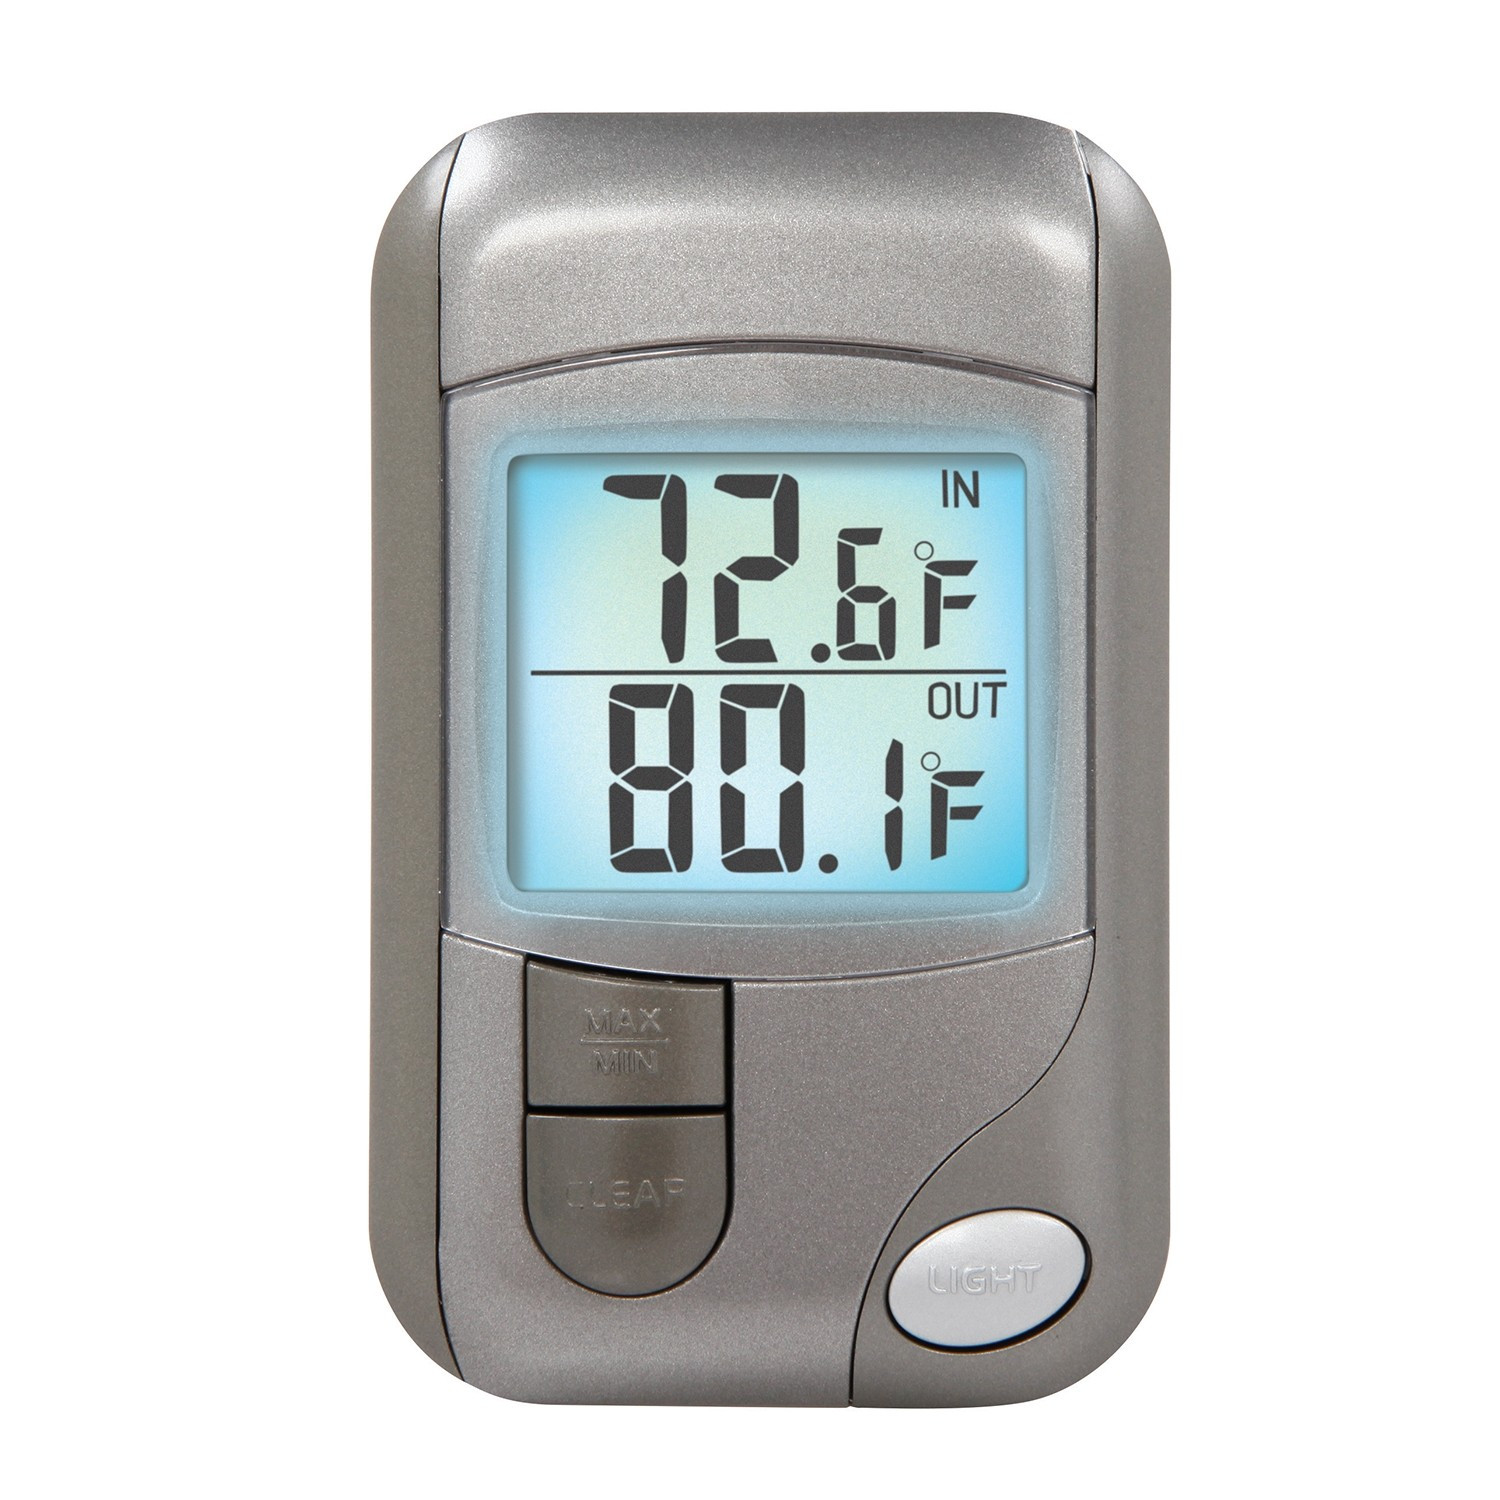 Best ideas about Best Indoor Outdoor Thermometer
. Save or Pin Indoor Outdoor Thermometer Now.